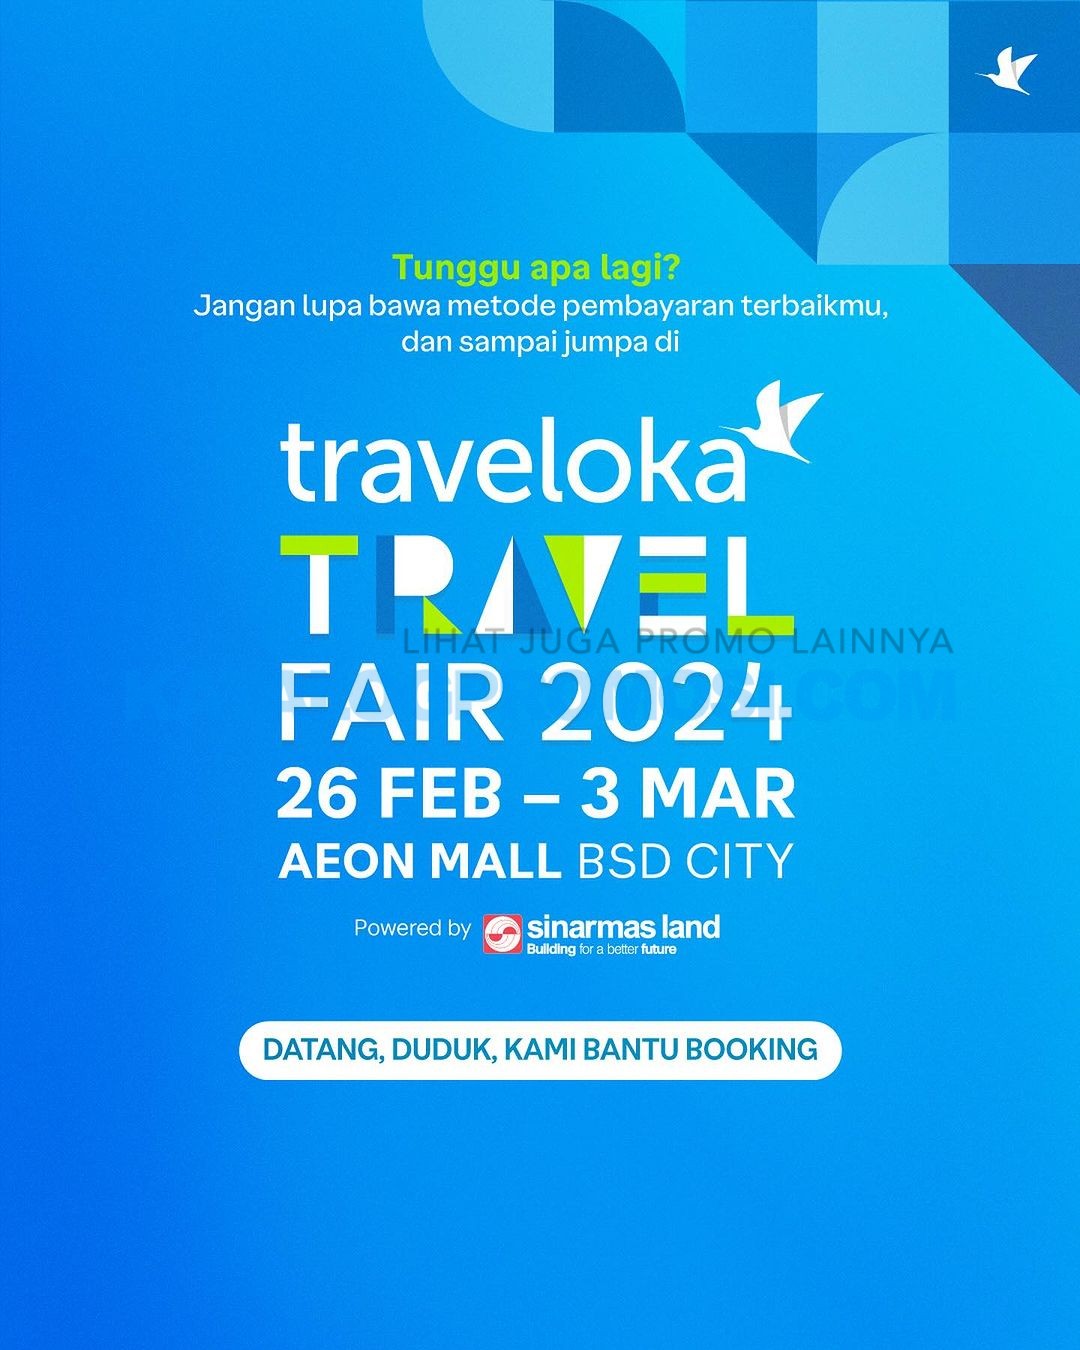 Traveloka Travel Fair 2024